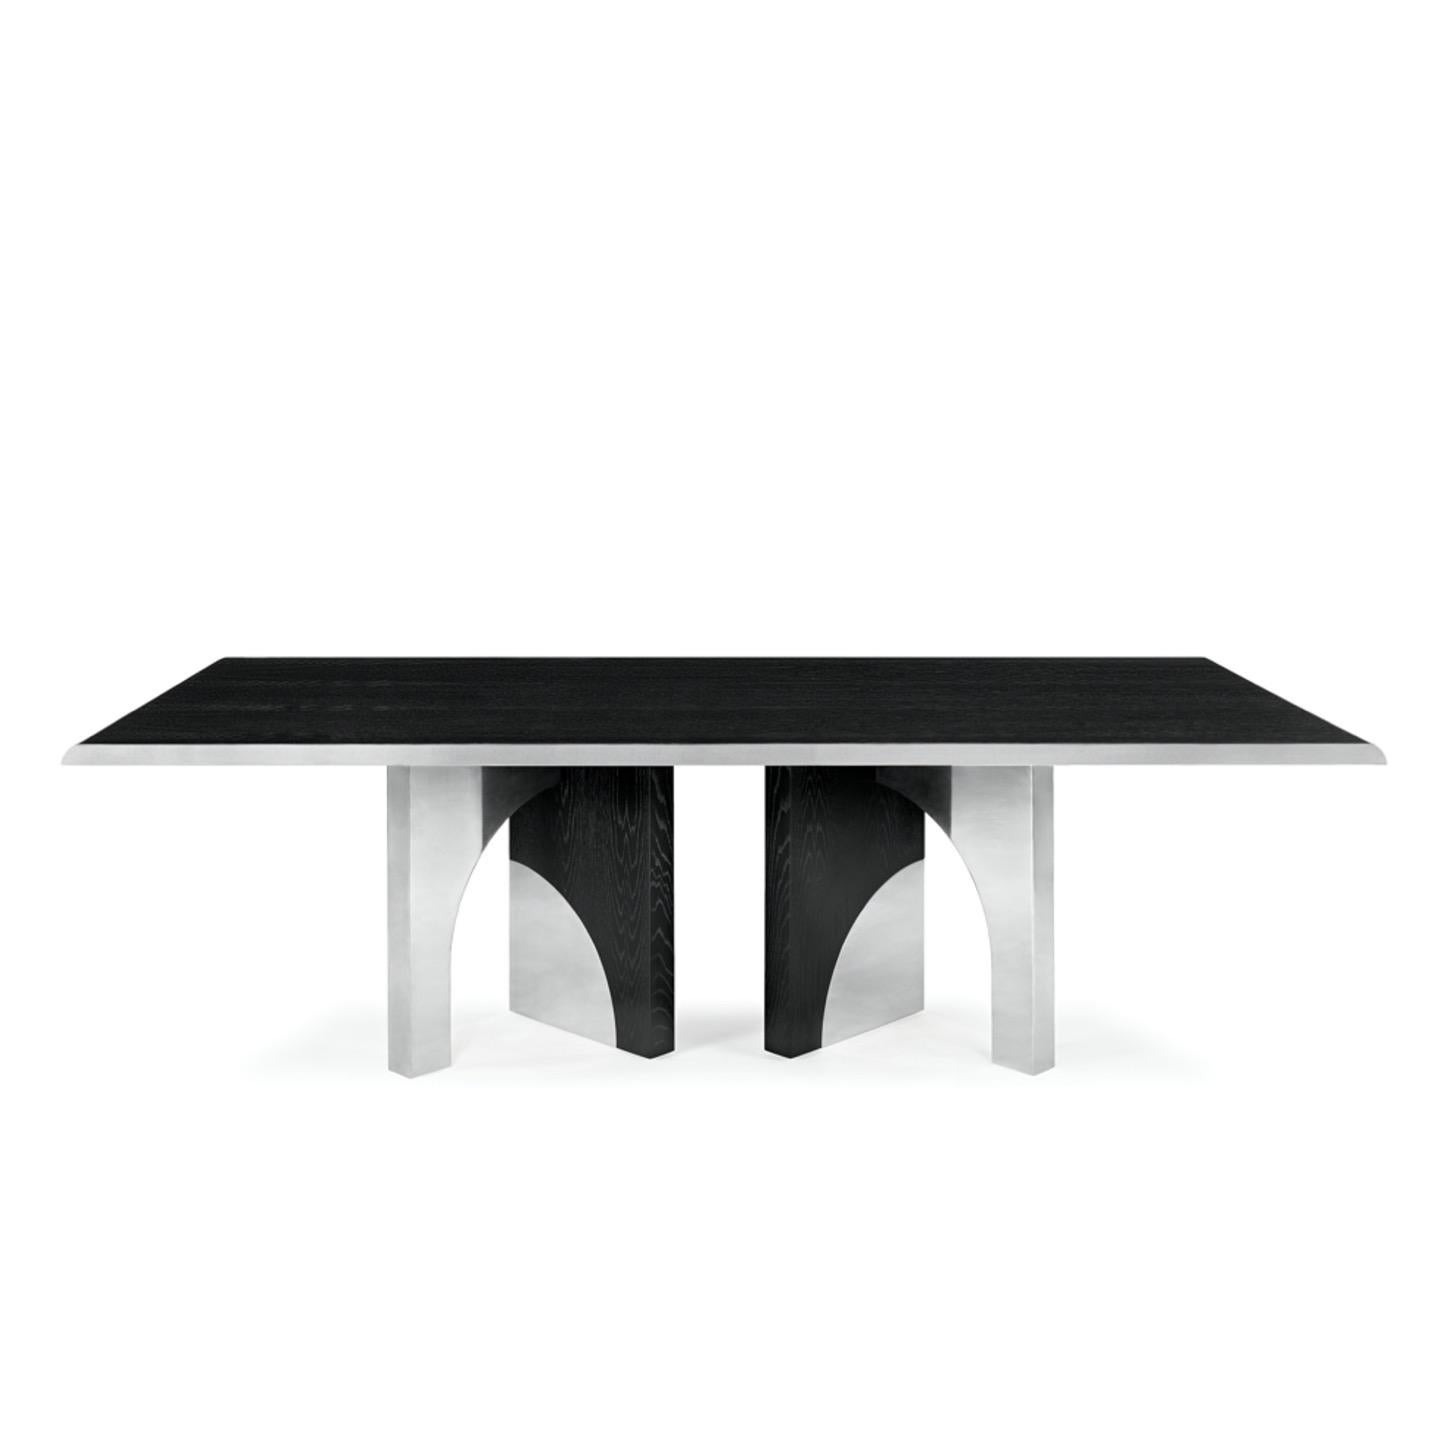 La table à manger Utopia est conçue à l'image de l'échelle architecturale qui suggère une traversée des structures d'une ville utopique, organisée par les principes de symétrie et de formes idéales.
Le design imposant combine le chêne foncé et